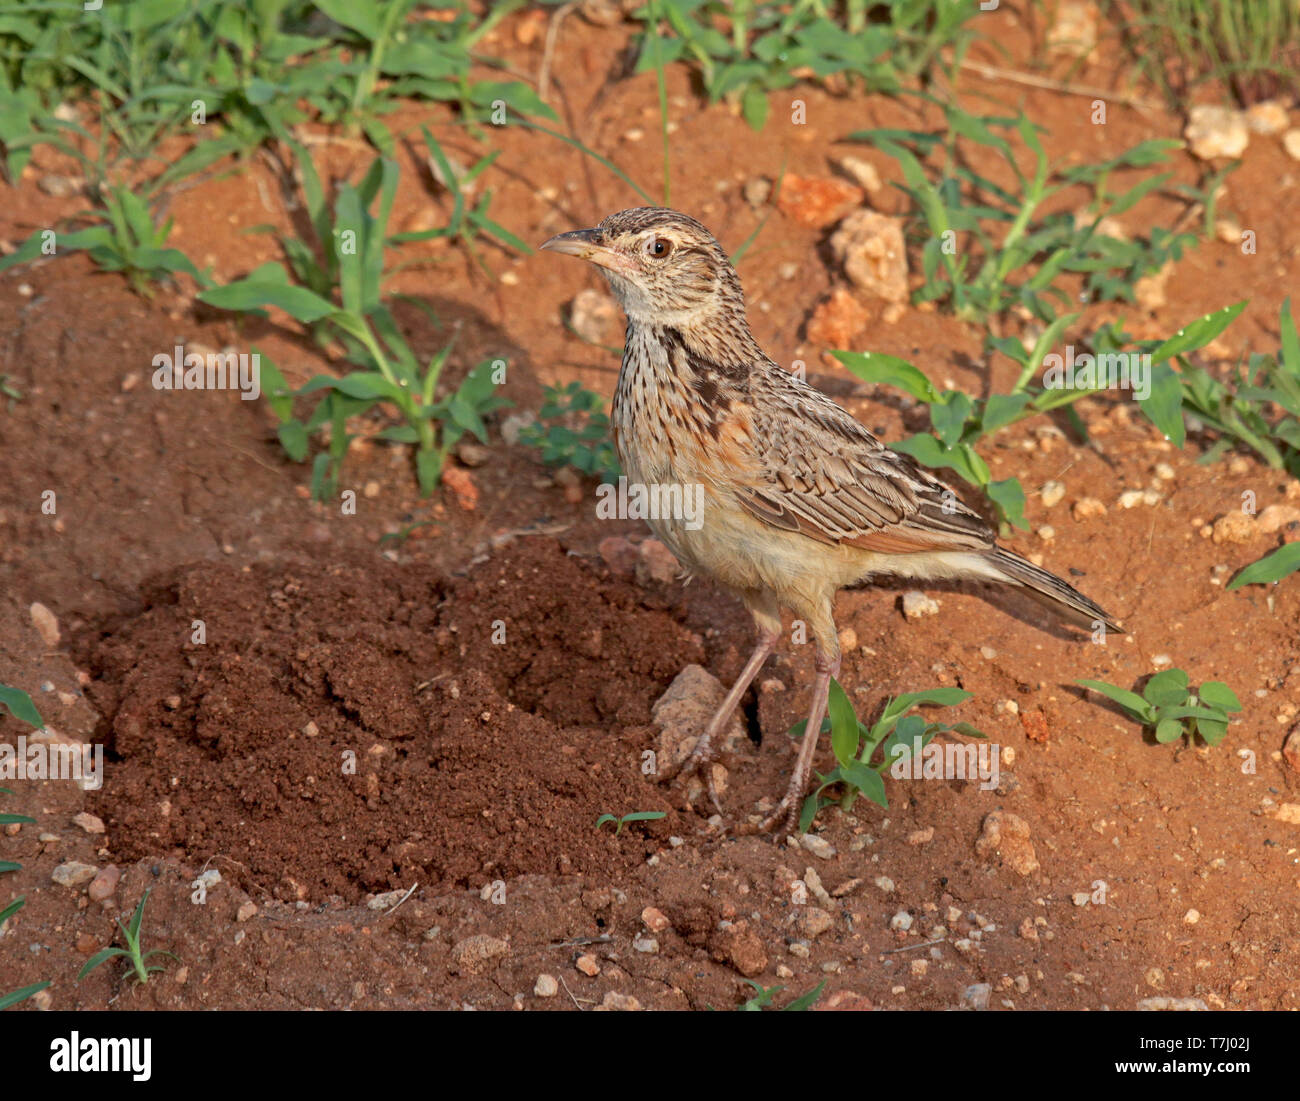 Rufous-naped lark (Mirafra africana) Stock Photo